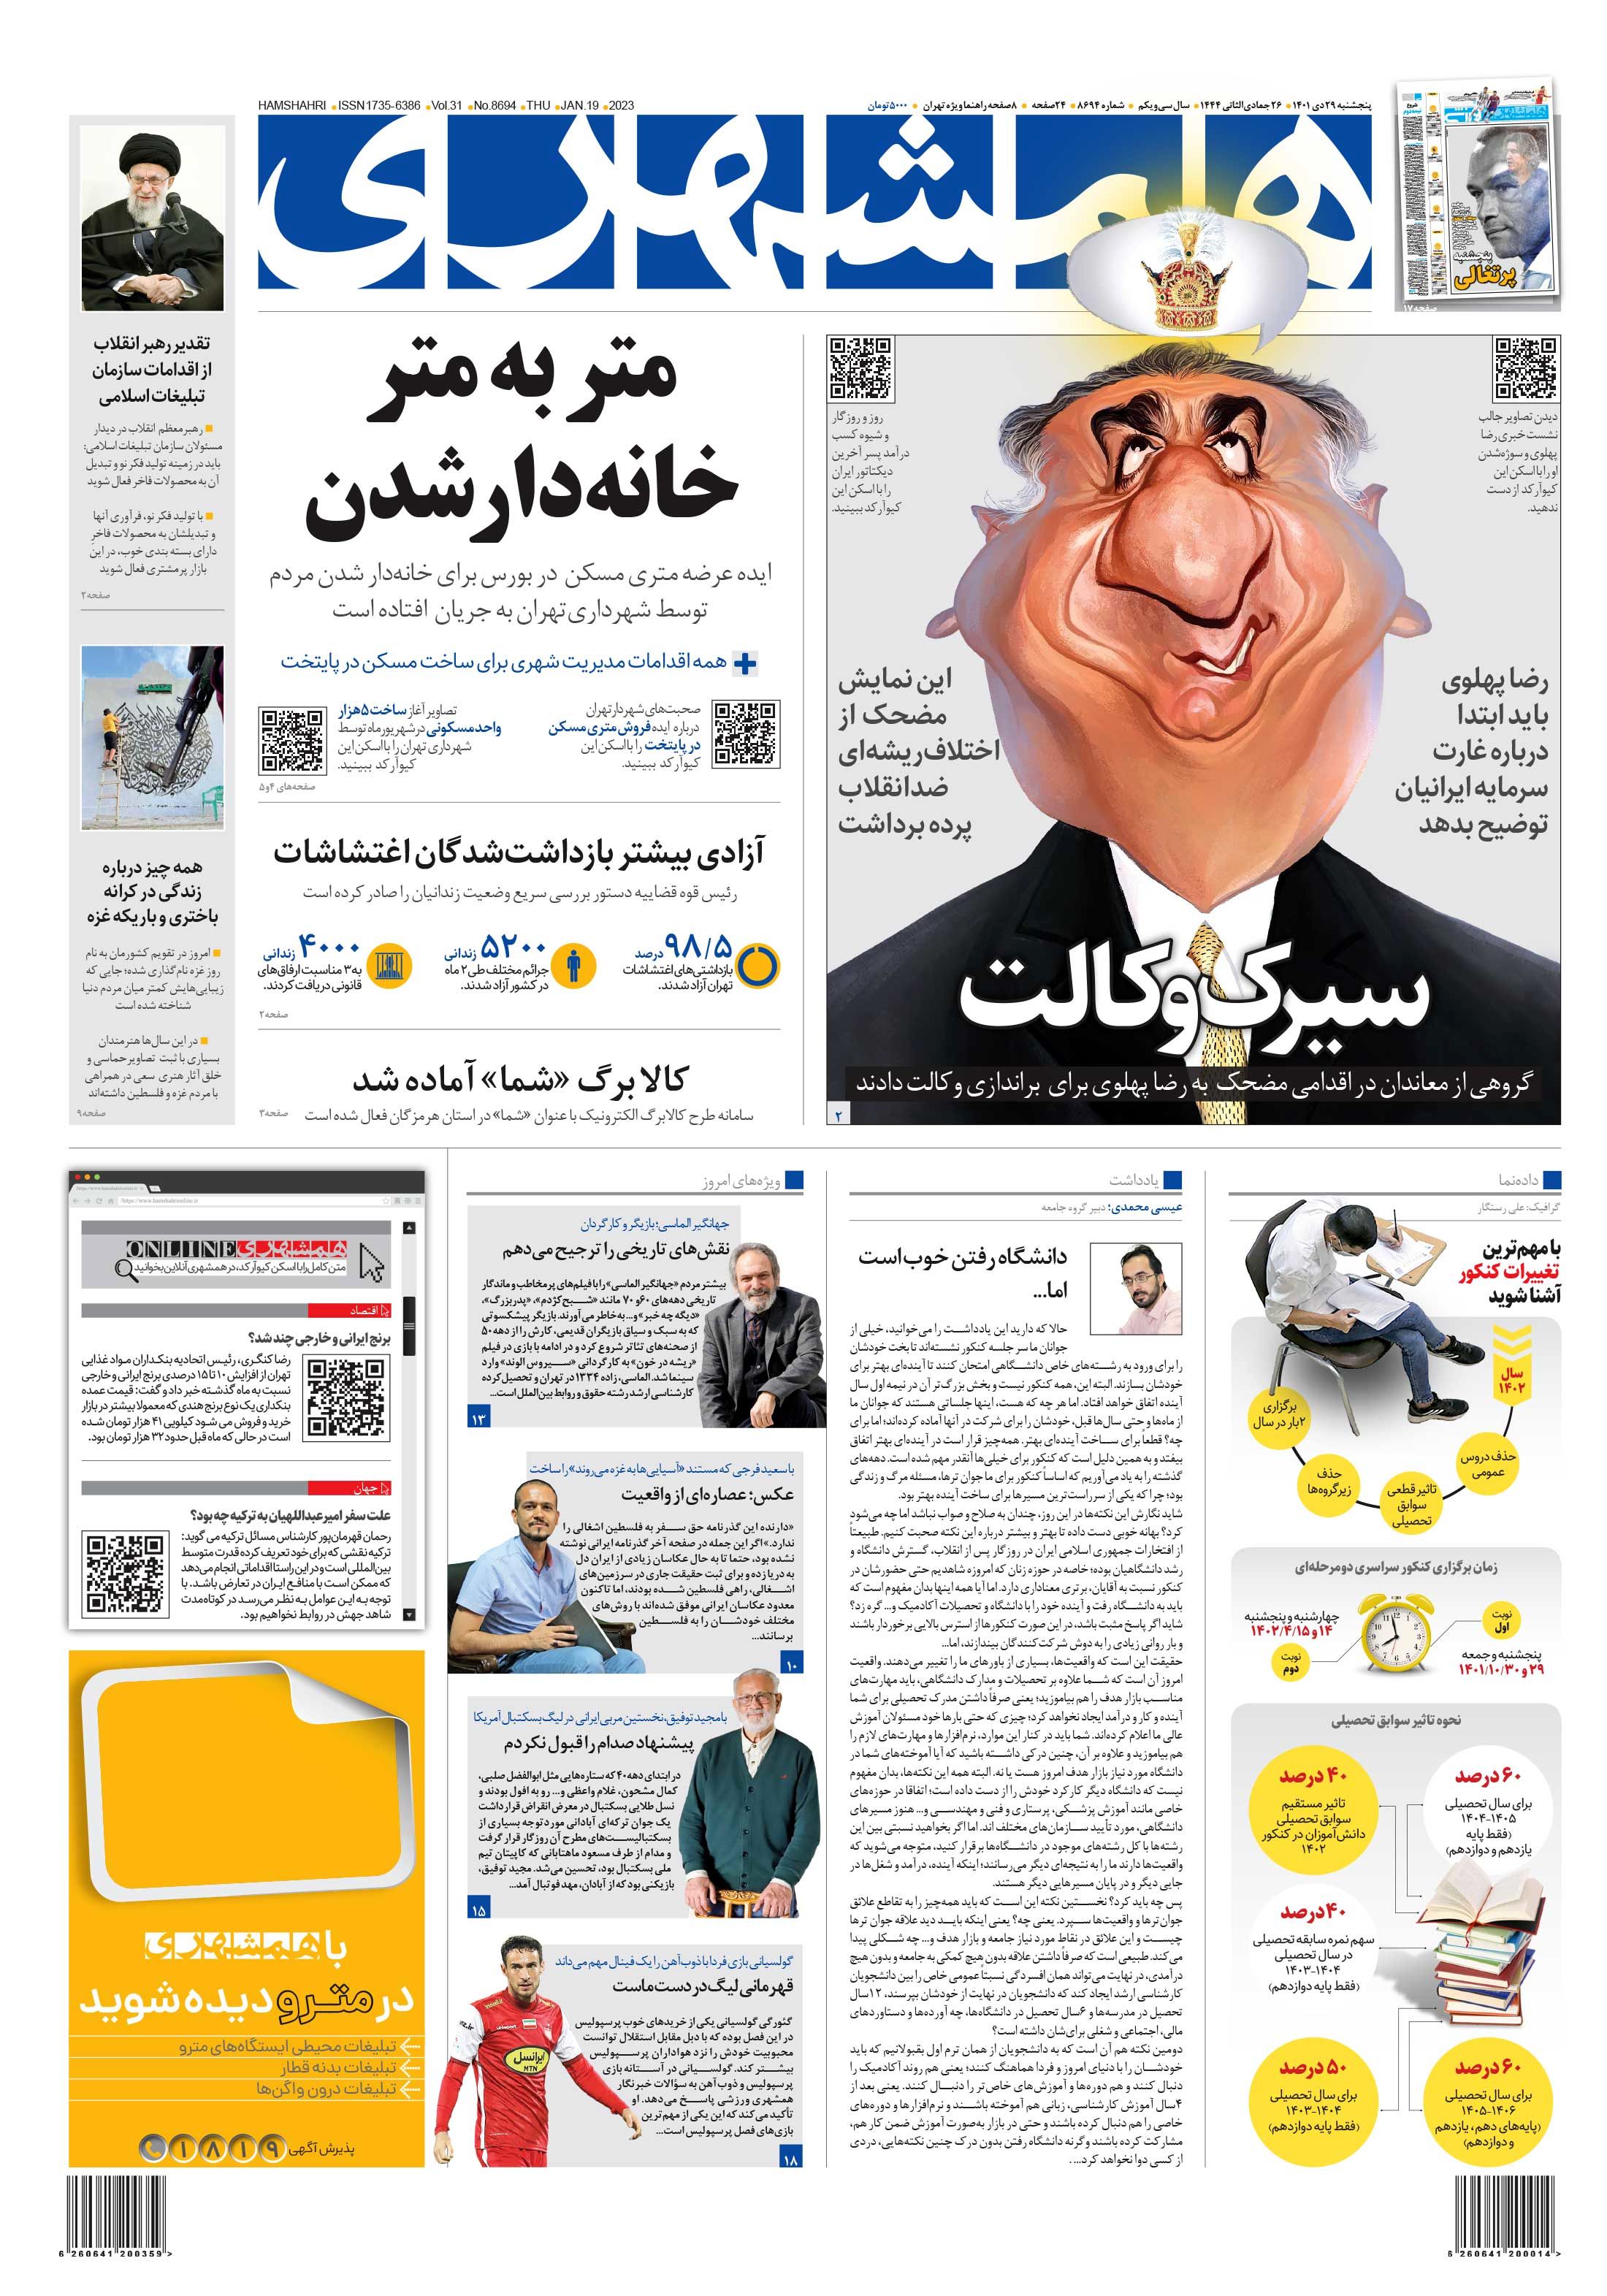 روزنامه همشهری: بین سلطنت طلب ها درباره رهبری رضا پهلوی توافقی وجود ندارد /اپوزیسیون نمایش  مضحکی به راه انداخته است